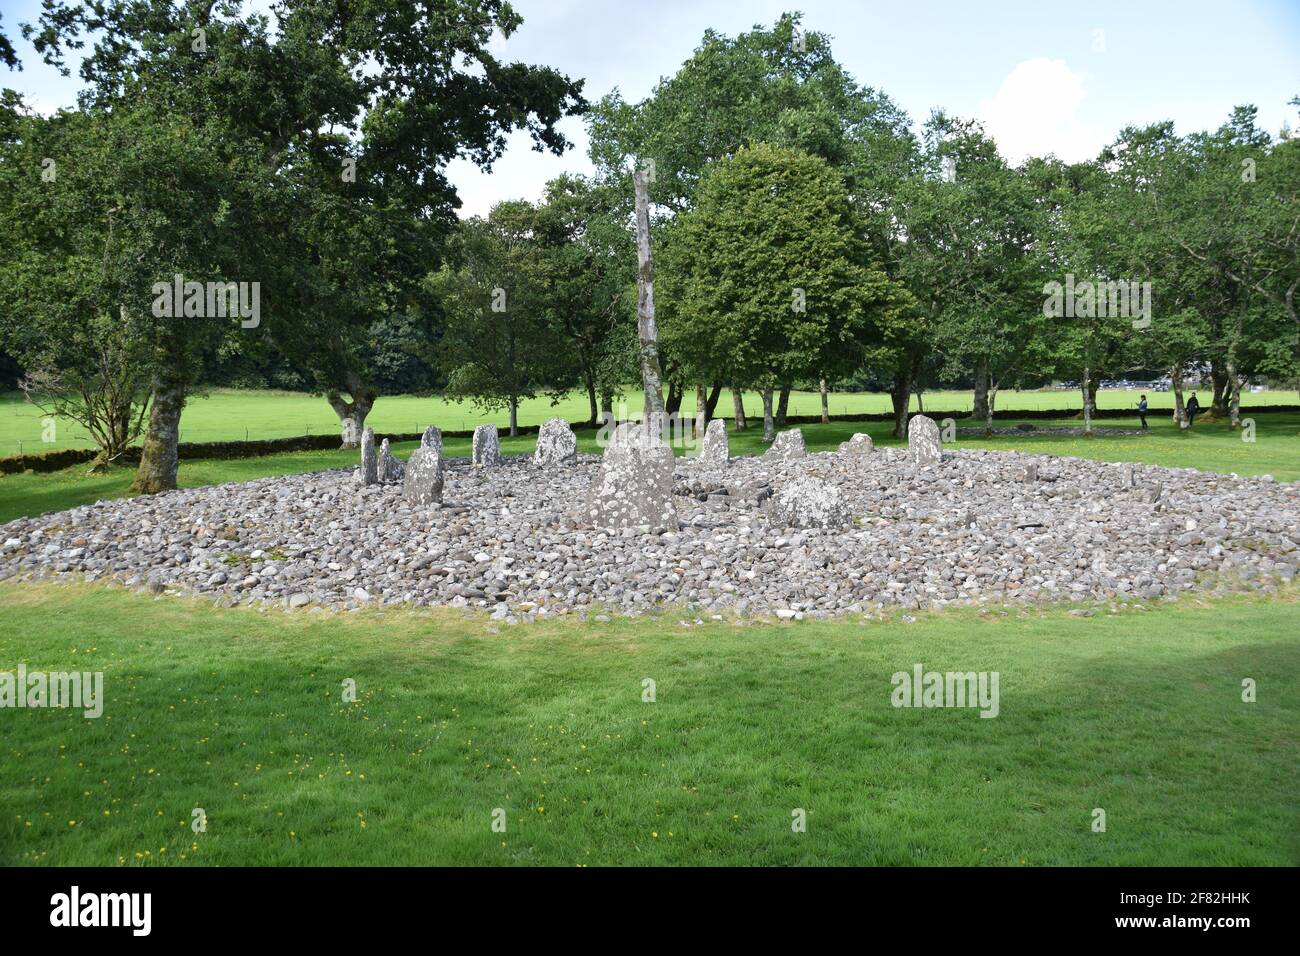 Temple Wood Stone Circle, Kilmartin, Scotland Stock Photo